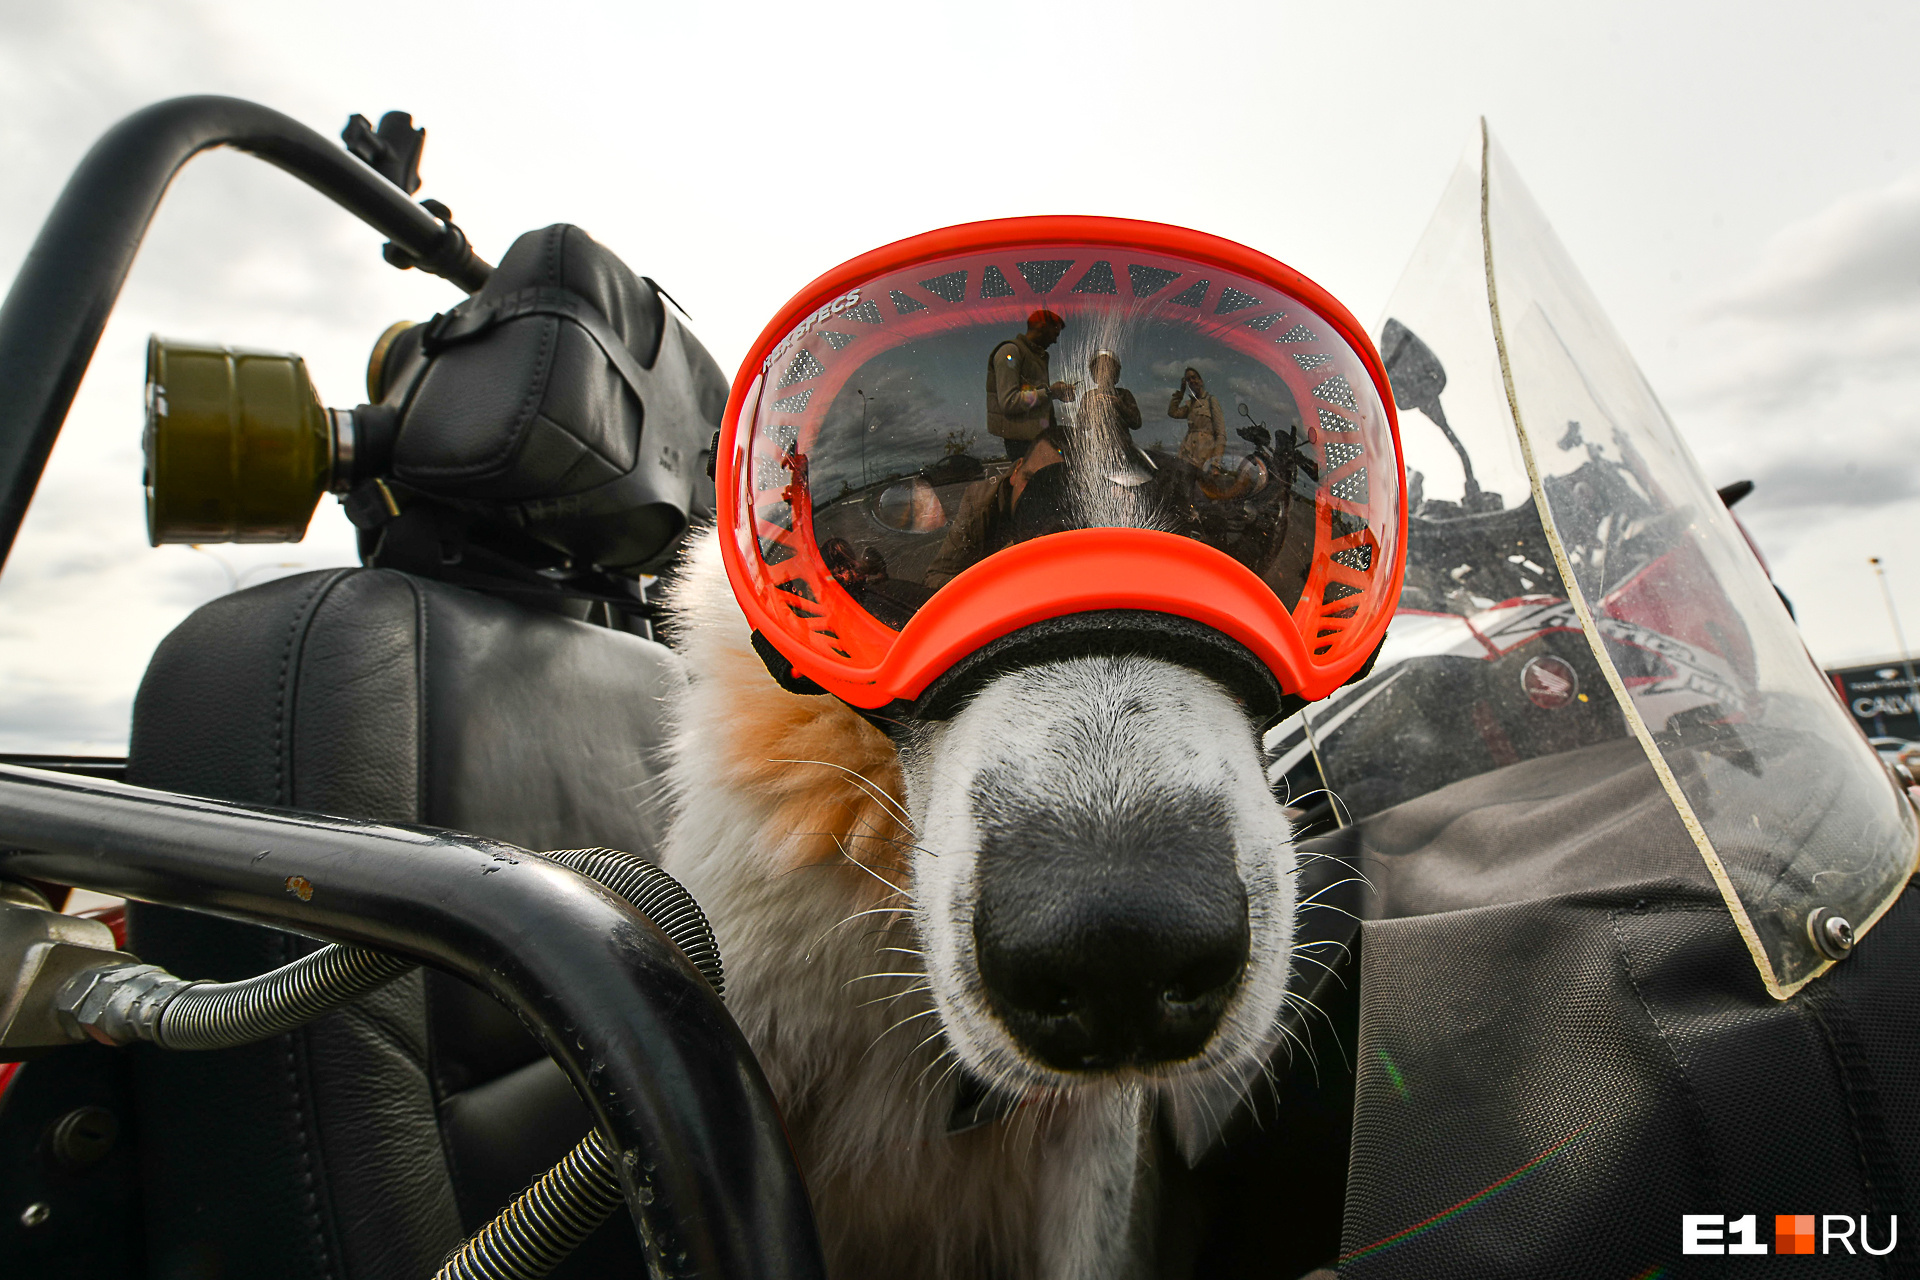 Это специальный собачий шлем и мотоочки, они защищают от ветра и холода